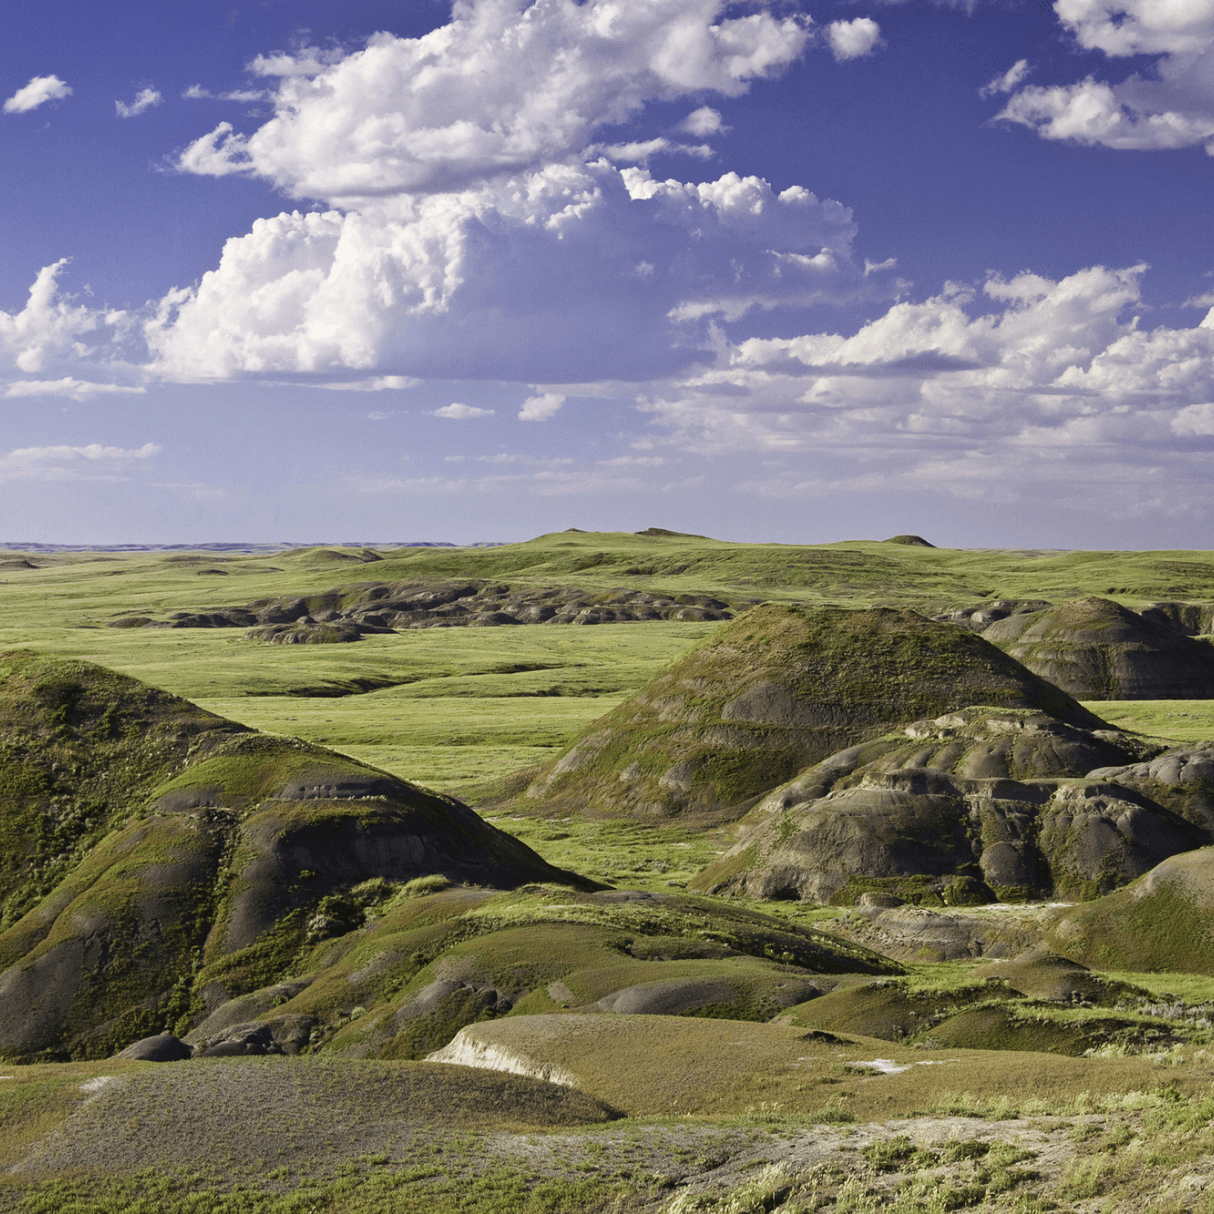 East Block, Grasslands National Park, Saskatchewan